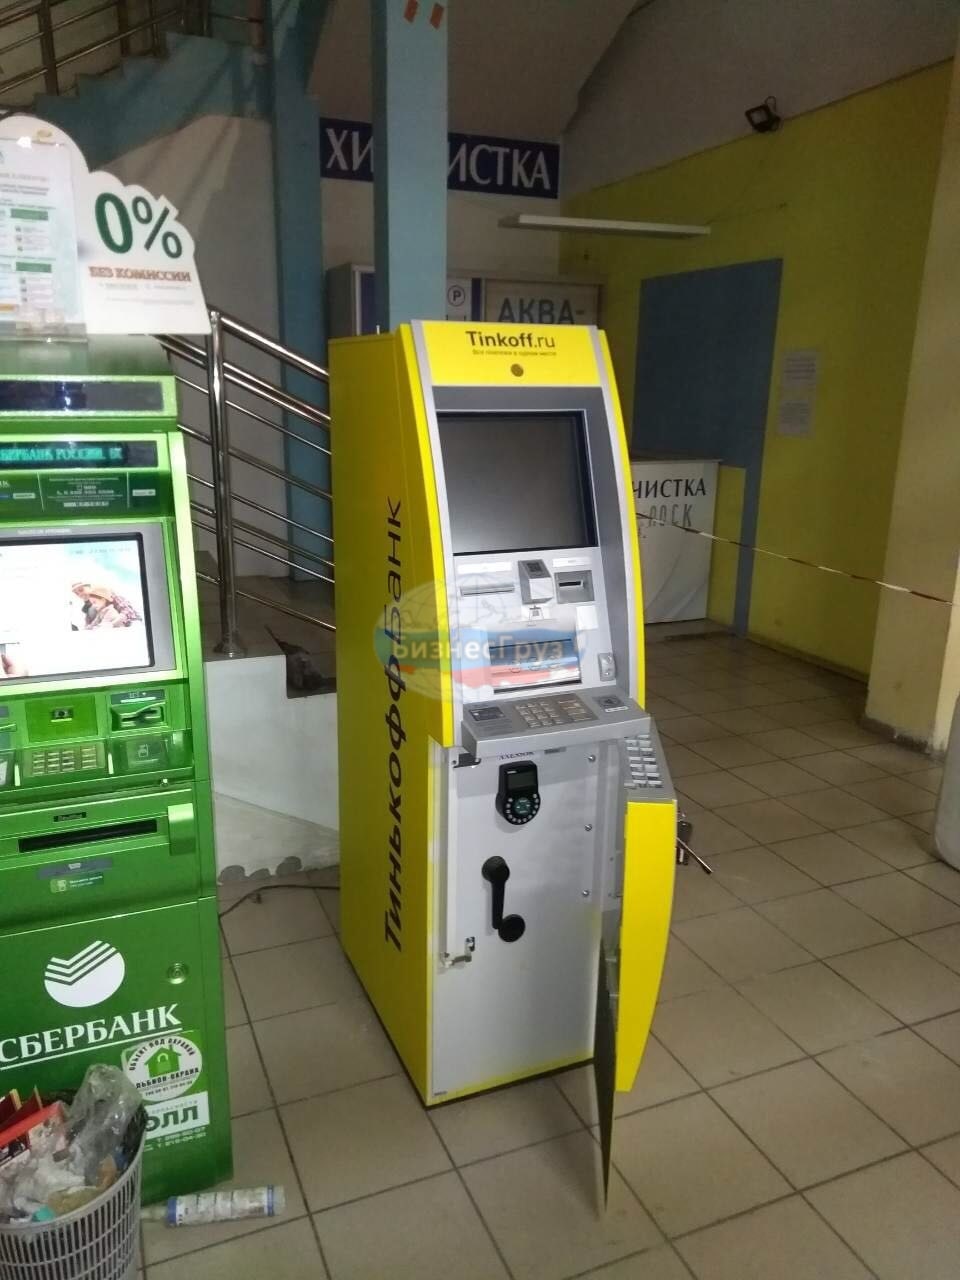 Пополнить тинькофф через банкомат сбера. Сборка банкомата. Желтый Банкомат. Взломанные банкоматы.